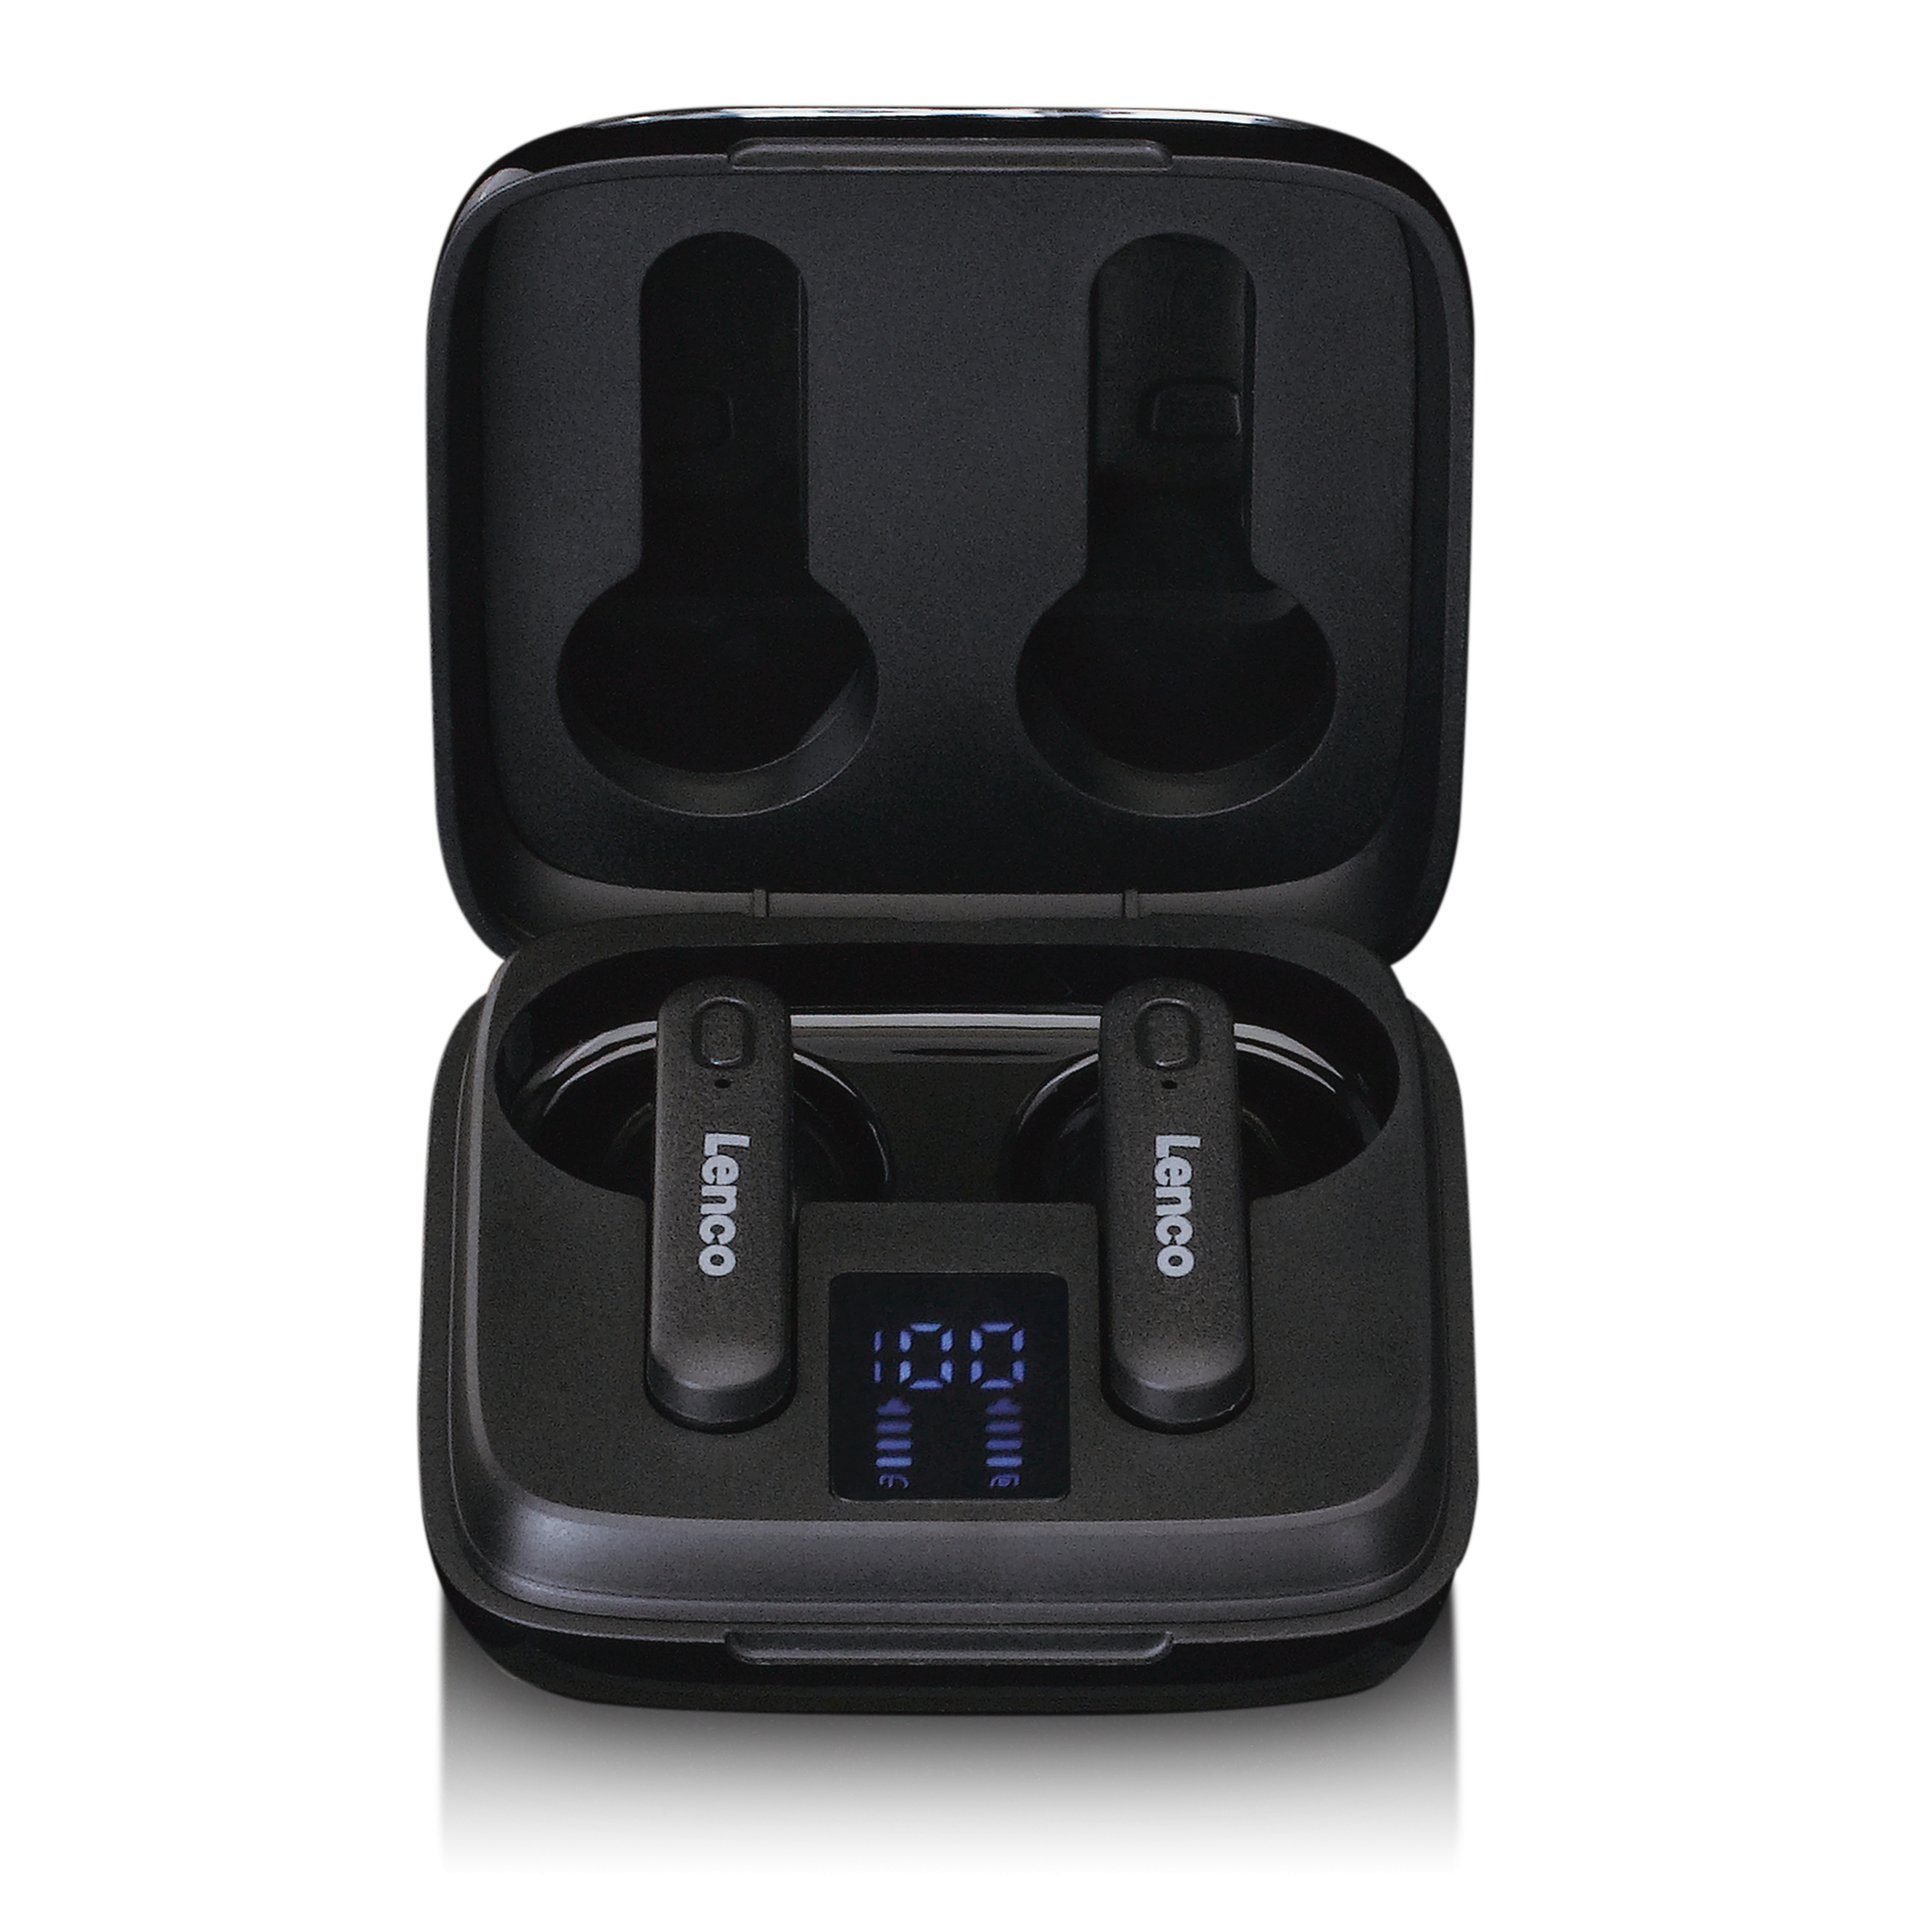 Lenco EPB-430BK - Kabellose Kopfhörer wireless In-Ear-Kopfhörer, Lade-Case  mit Anzeige des genauen Ladezustands des Akkus in Prozent